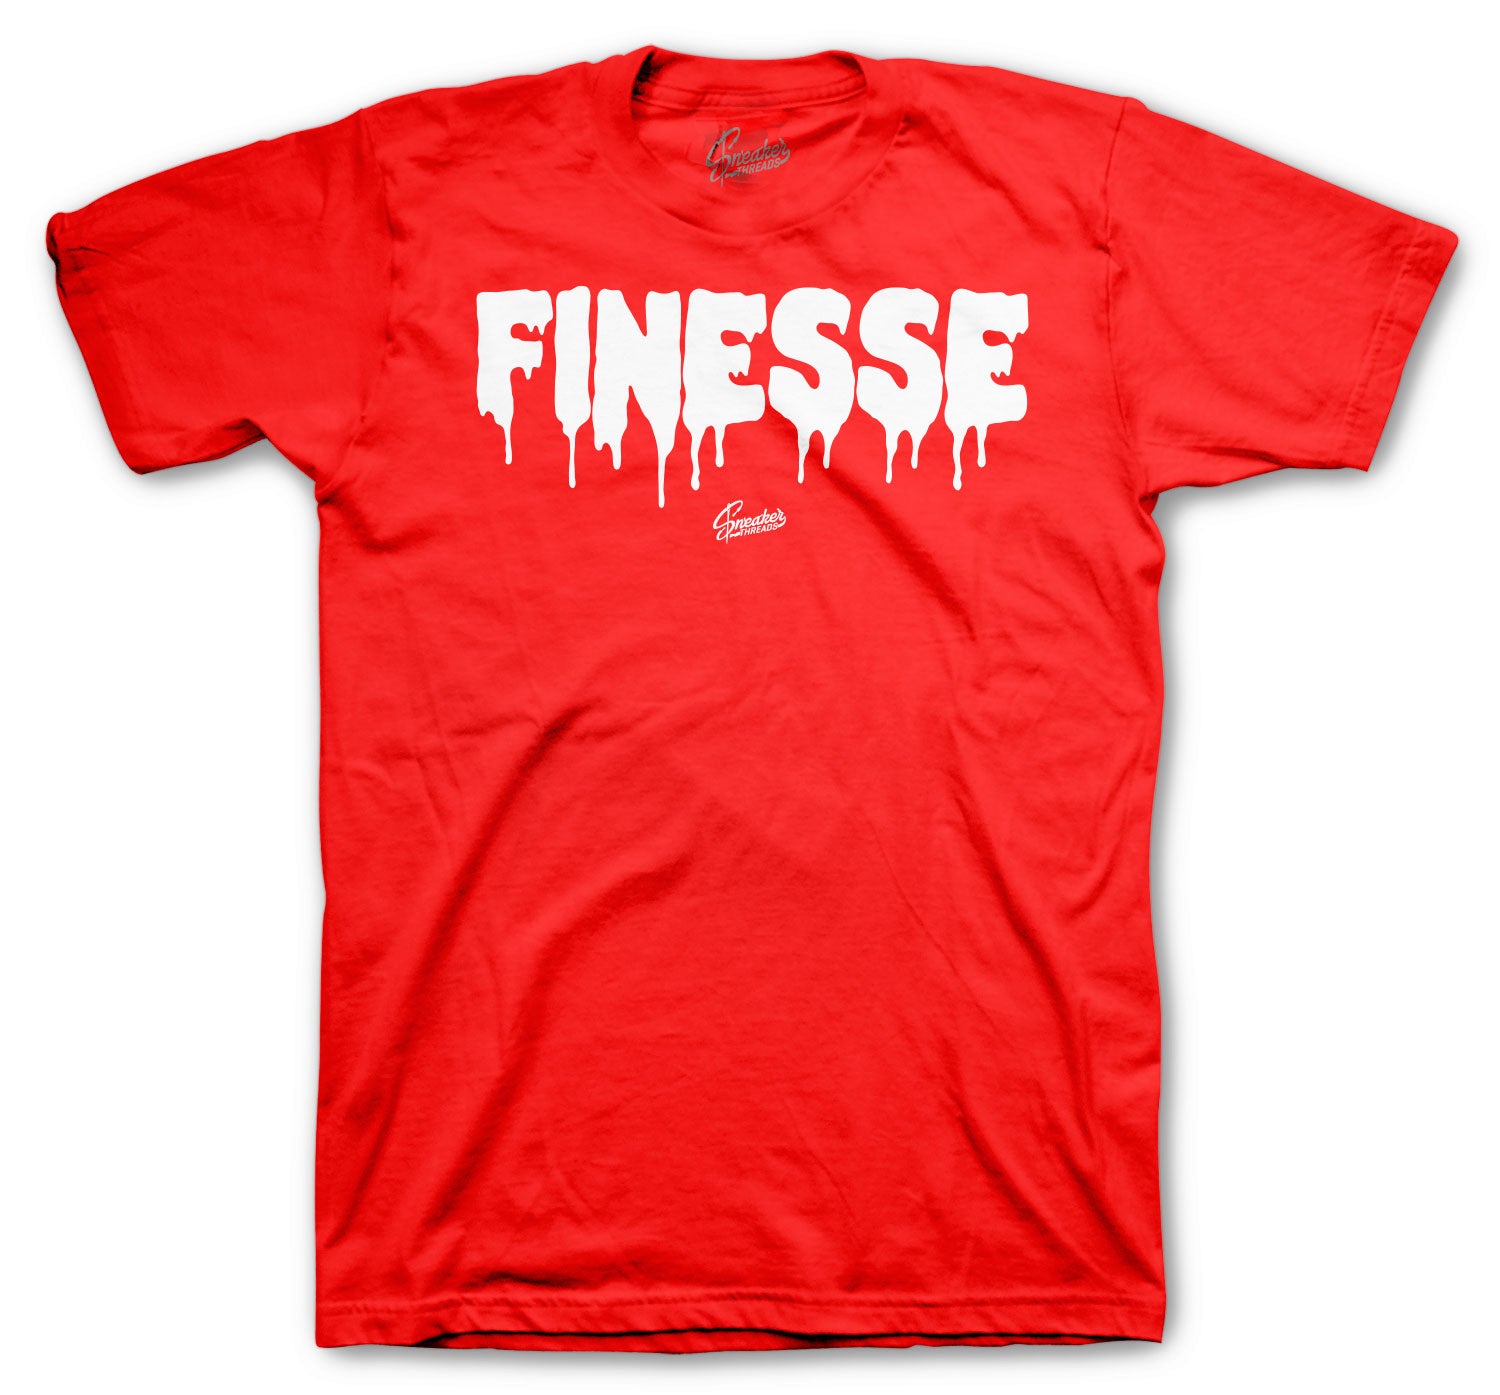 Retro 12 Twist Shirt - Finesse - Red